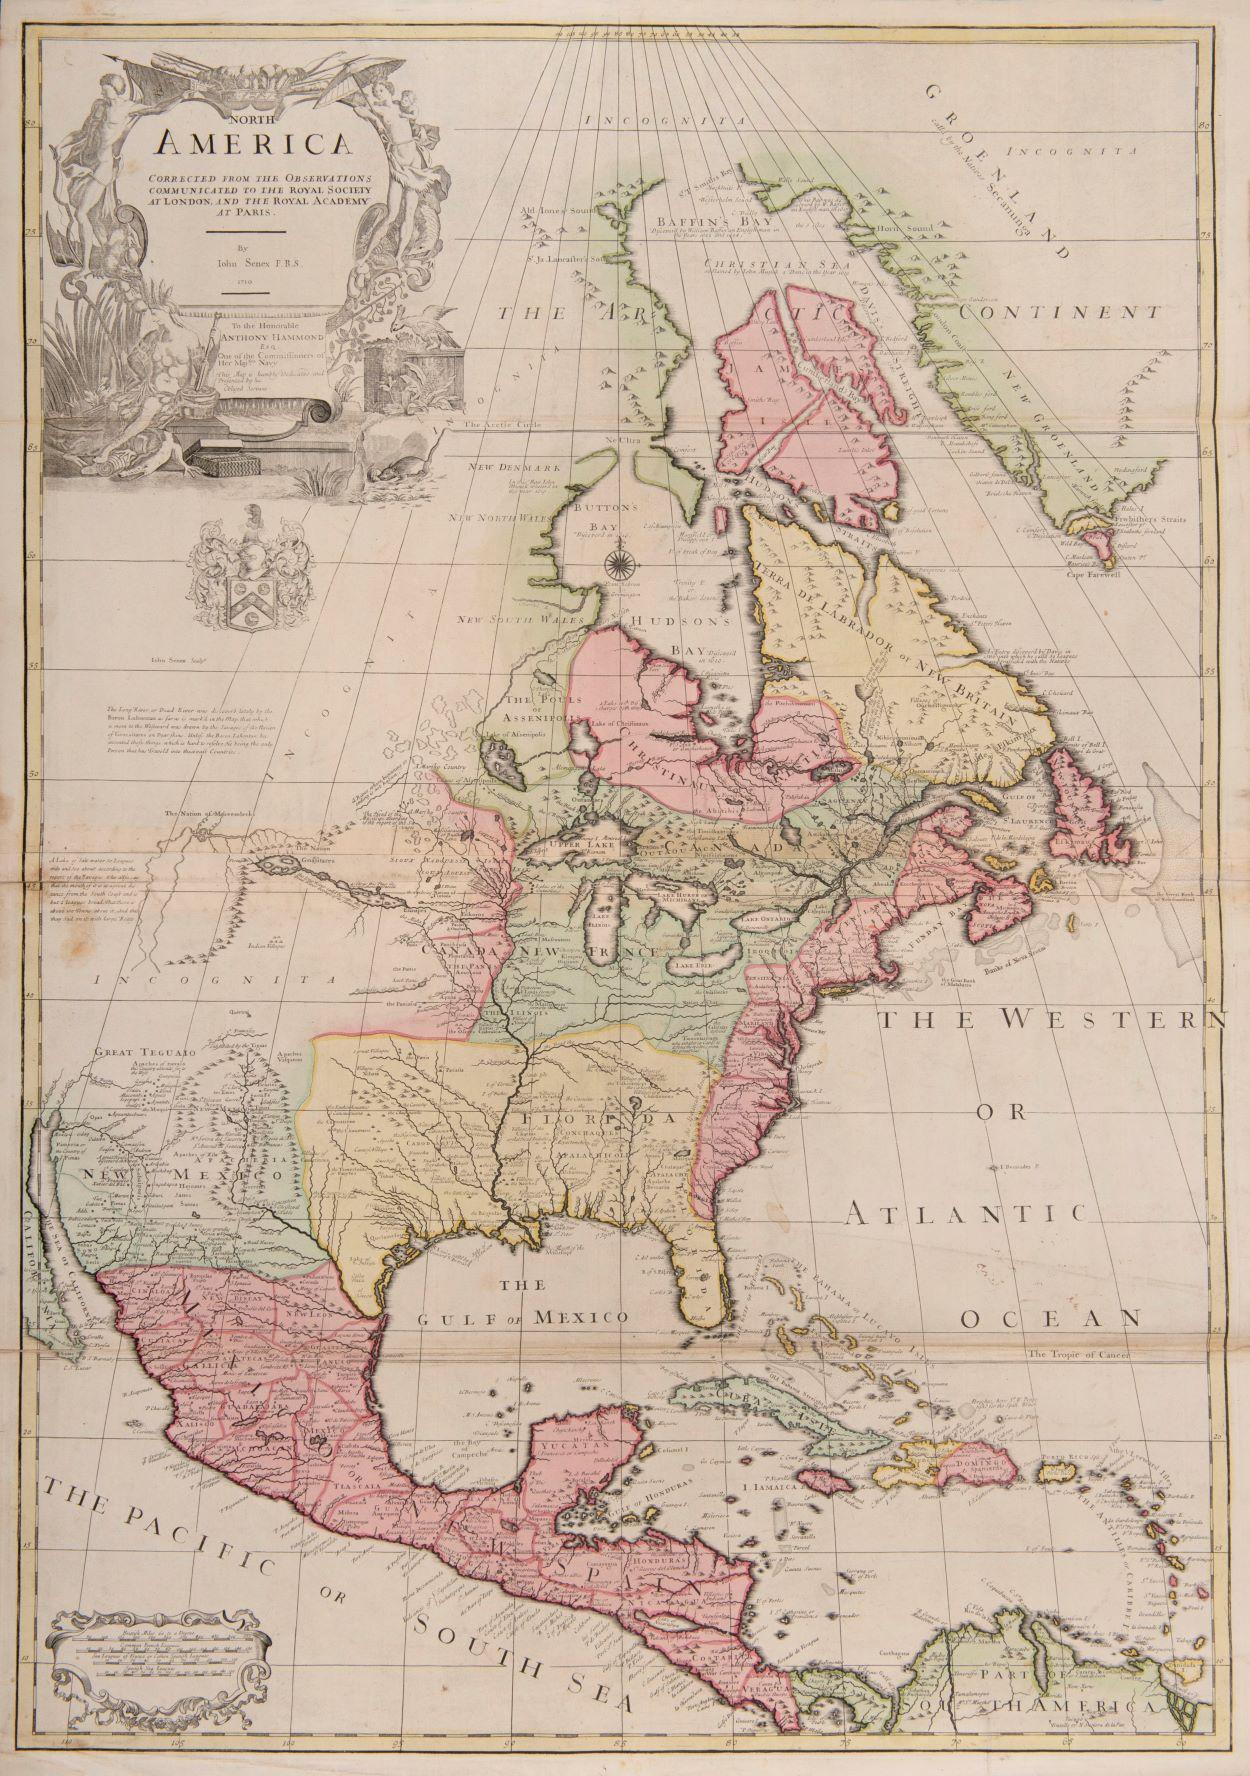 eine der frühesten großformatigen englischen Karten von Nordamerika